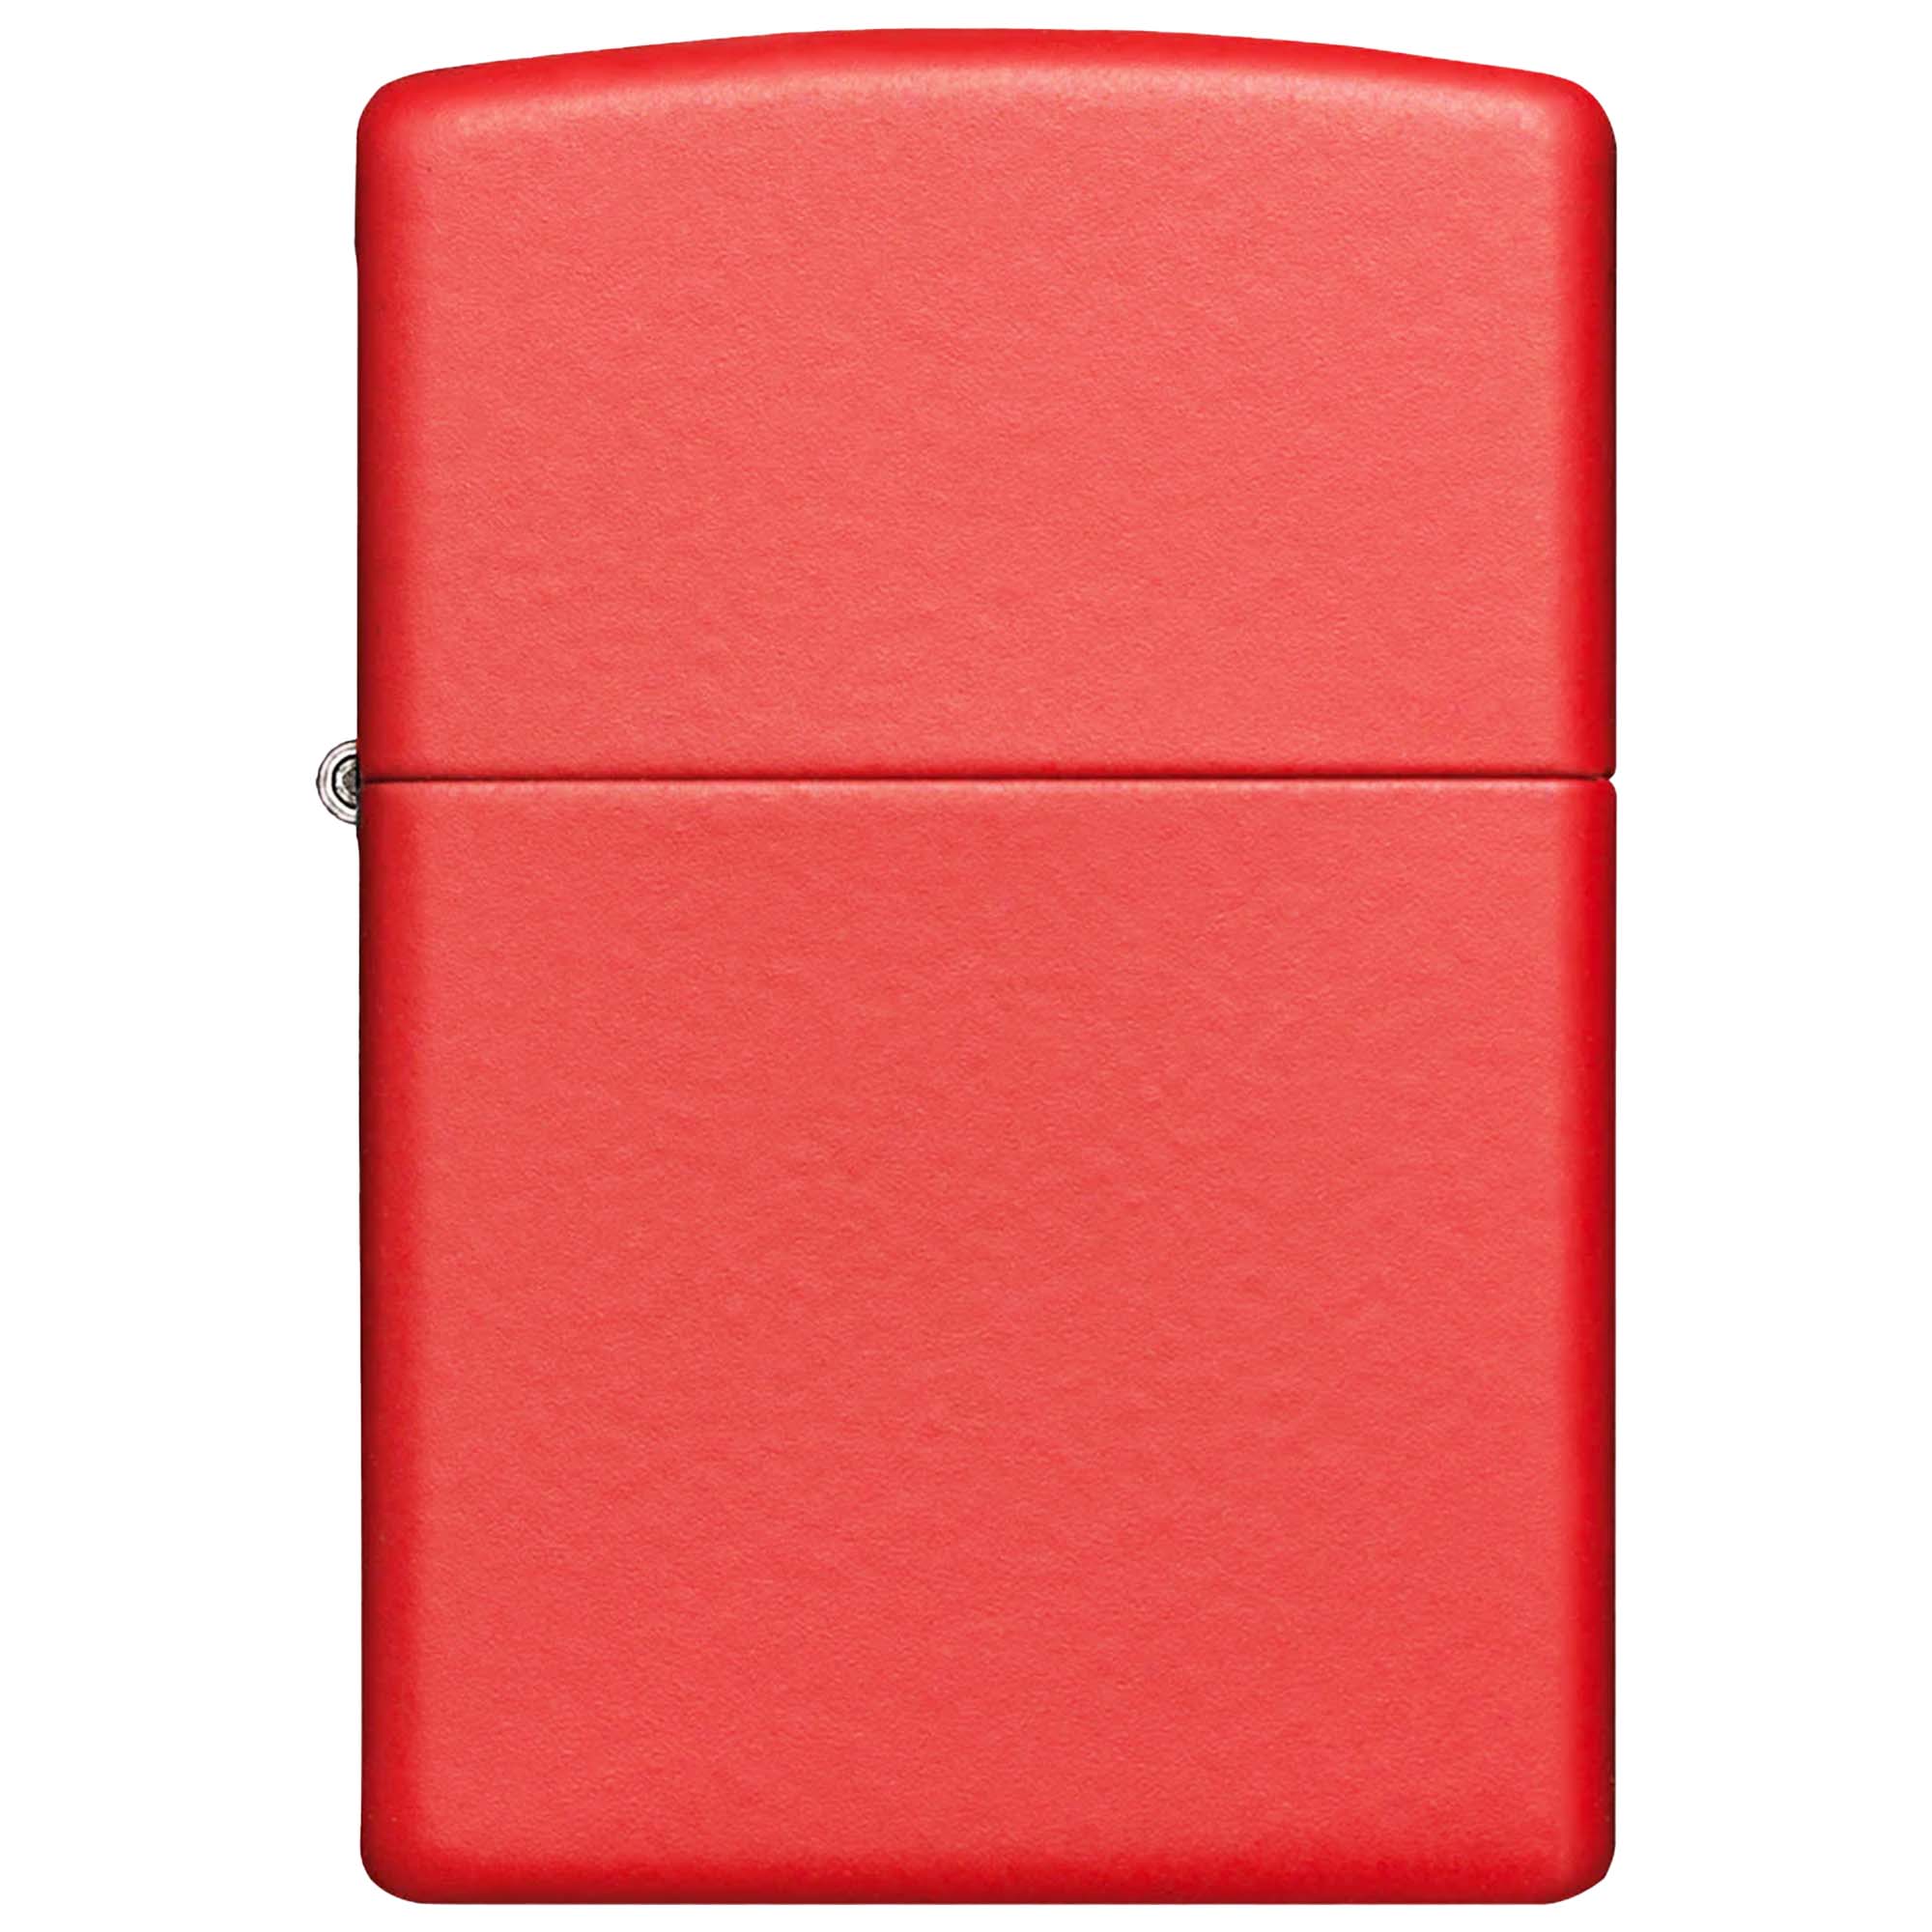 Zippo Lighter Basic Red Matte